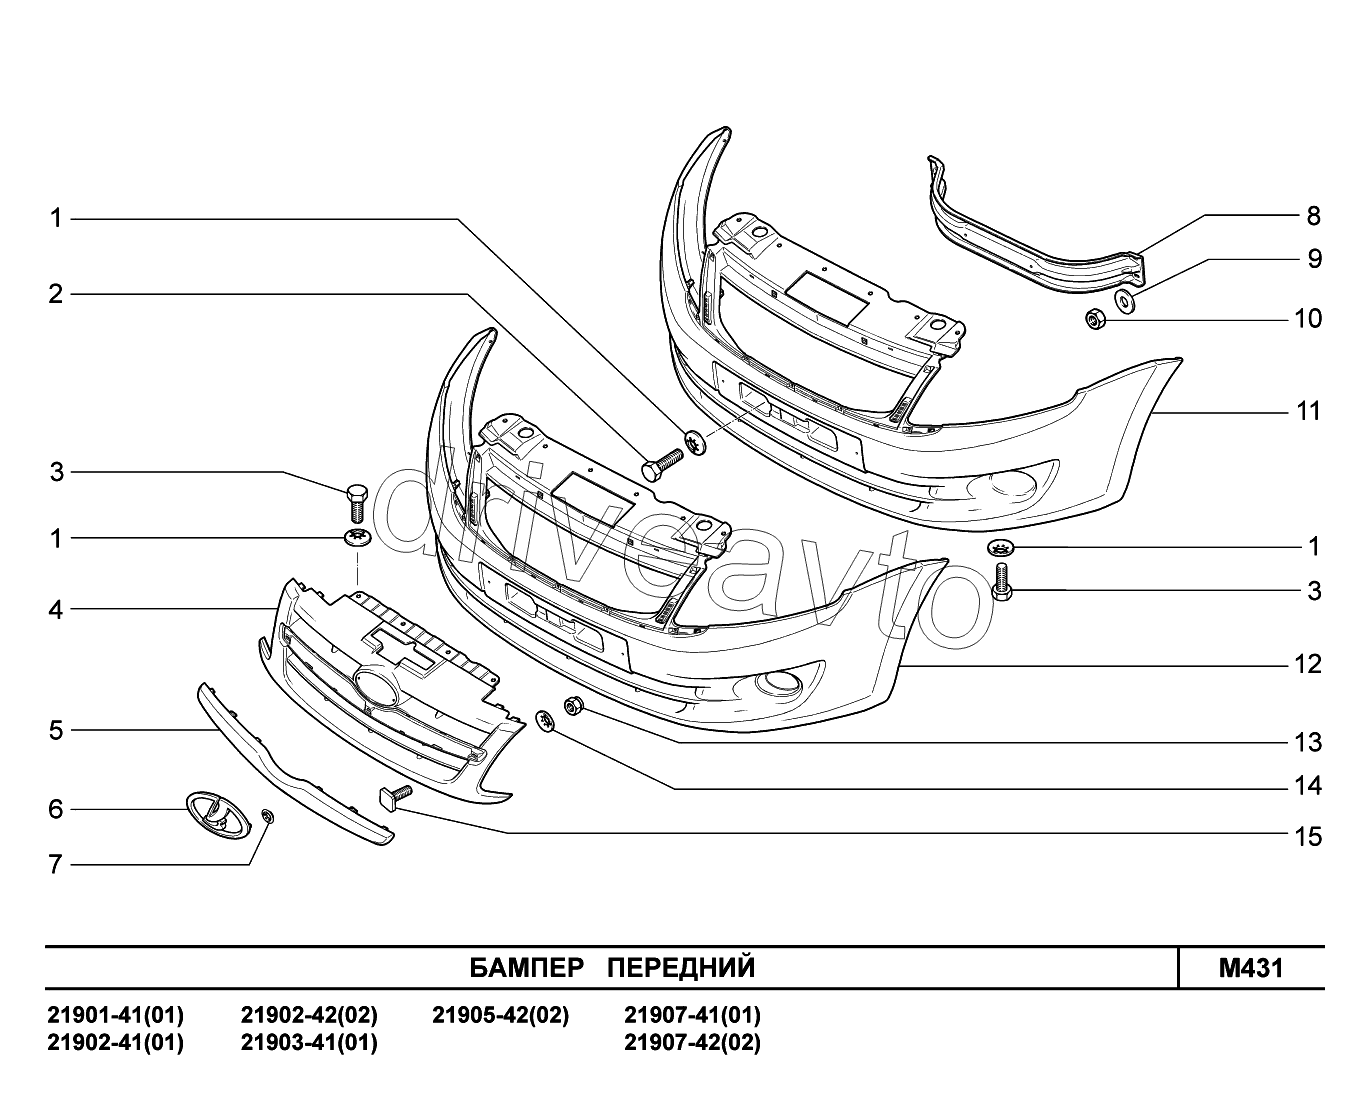 M431. Бампер  передний